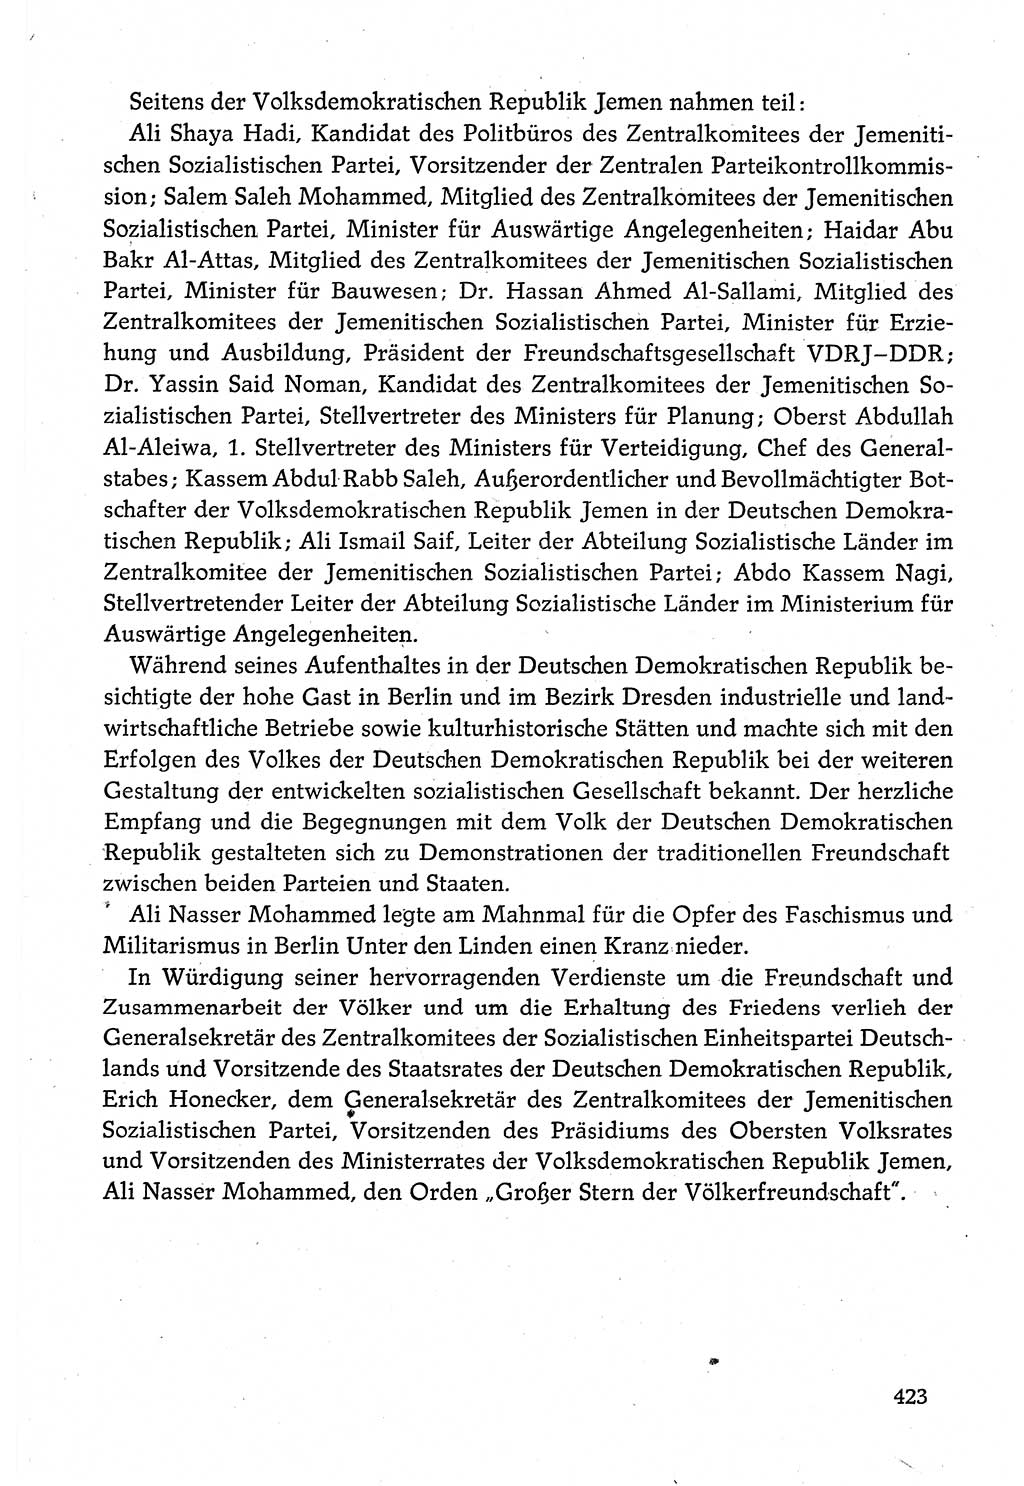 Dokumente der Sozialistischen Einheitspartei Deutschlands (SED) [Deutsche Demokratische Republik (DDR)] 1980-1981, Seite 423 (Dok. SED DDR 1980-1981, S. 423)